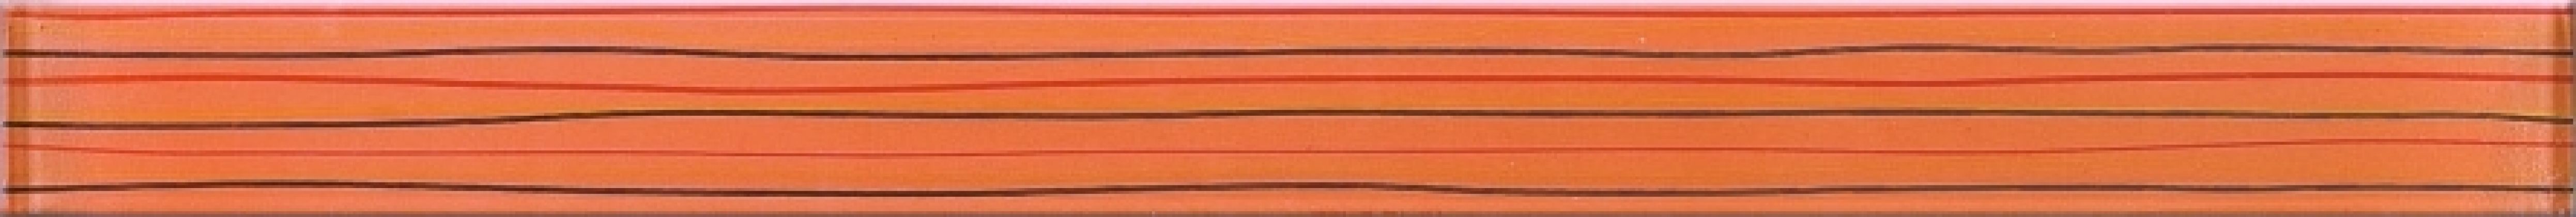 Бордюр Linero Orange Glass Listwa 5x59